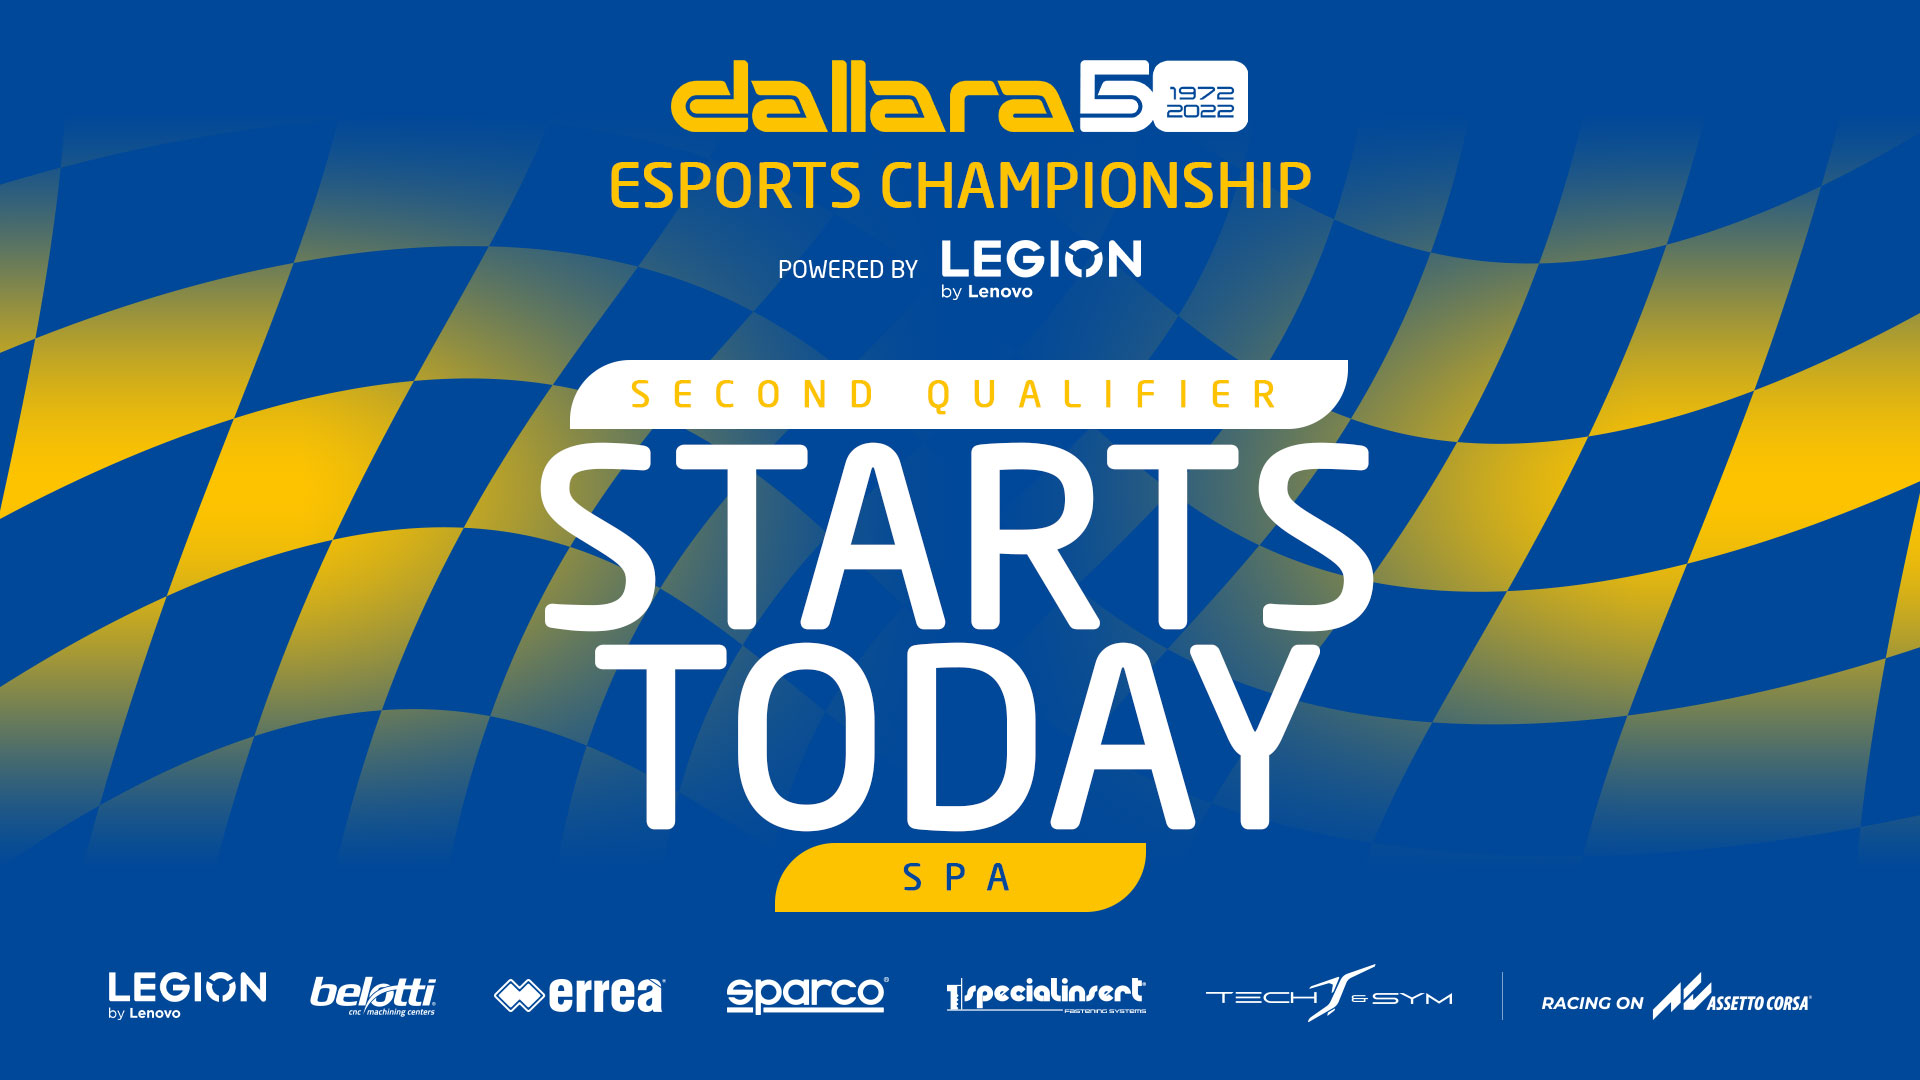 Dallara Esports Championship